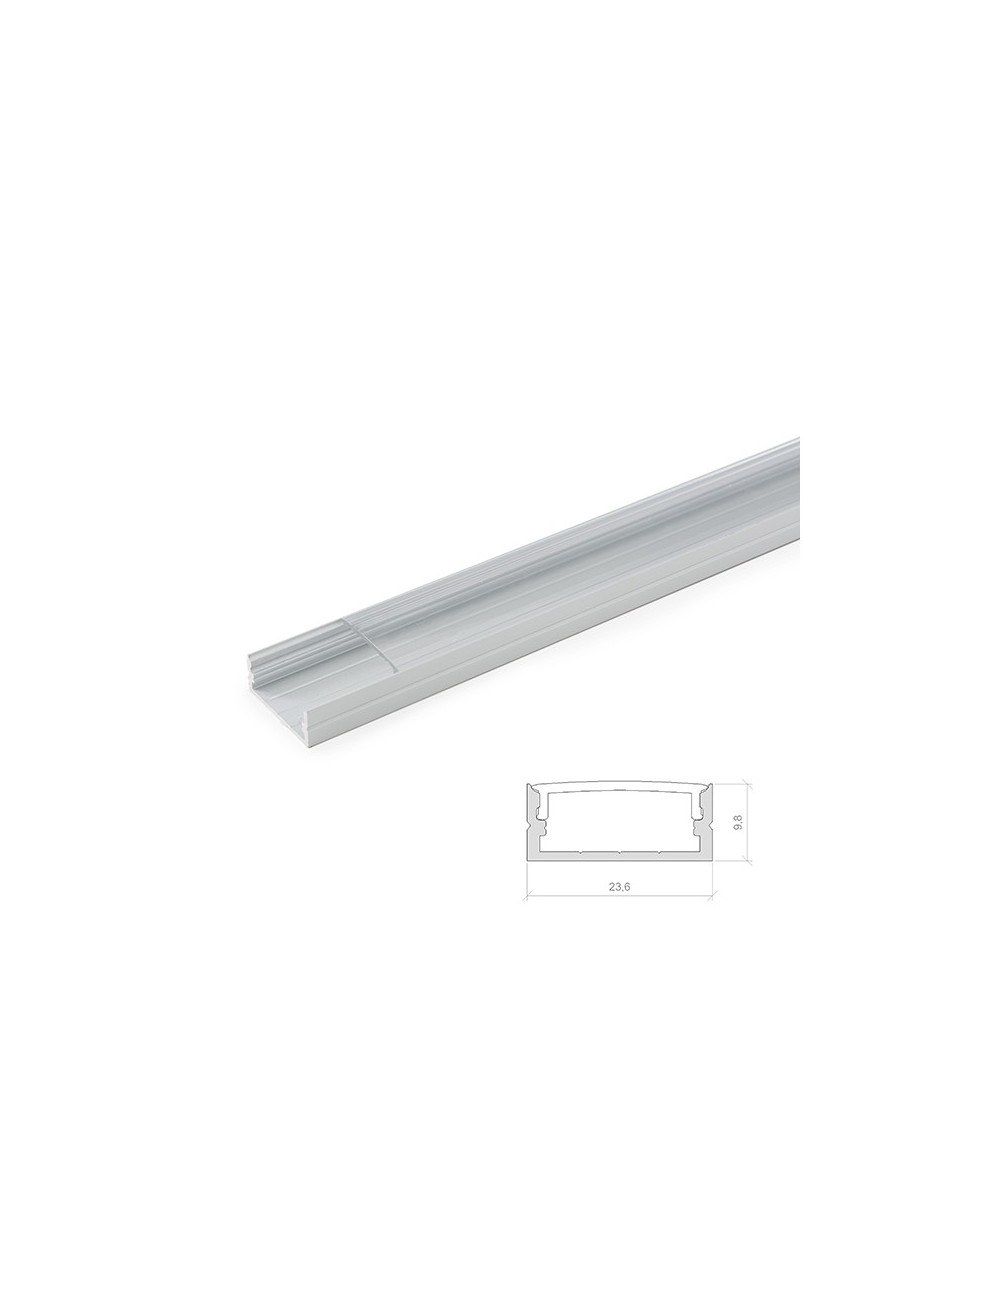 Profil Aluminium Pour Bande LED Double - Diffuseur laiteux x 2M